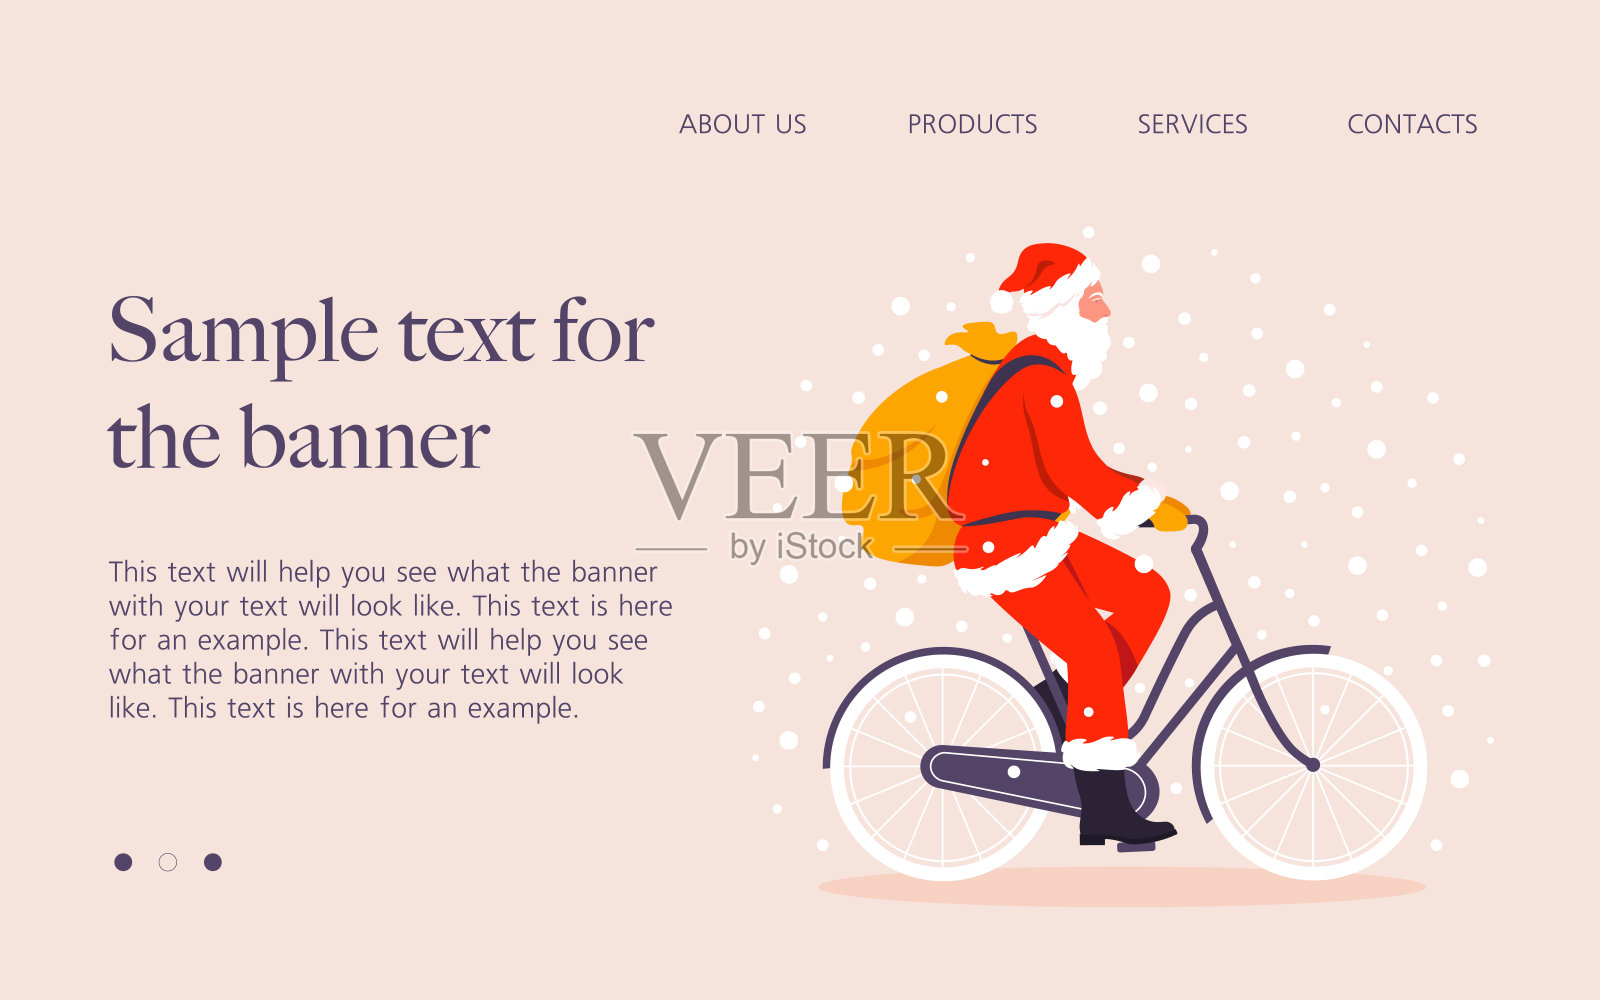 一位装扮成圣诞老人的老人在大雪中骑自行车。圣诞节的网站。插画图片素材